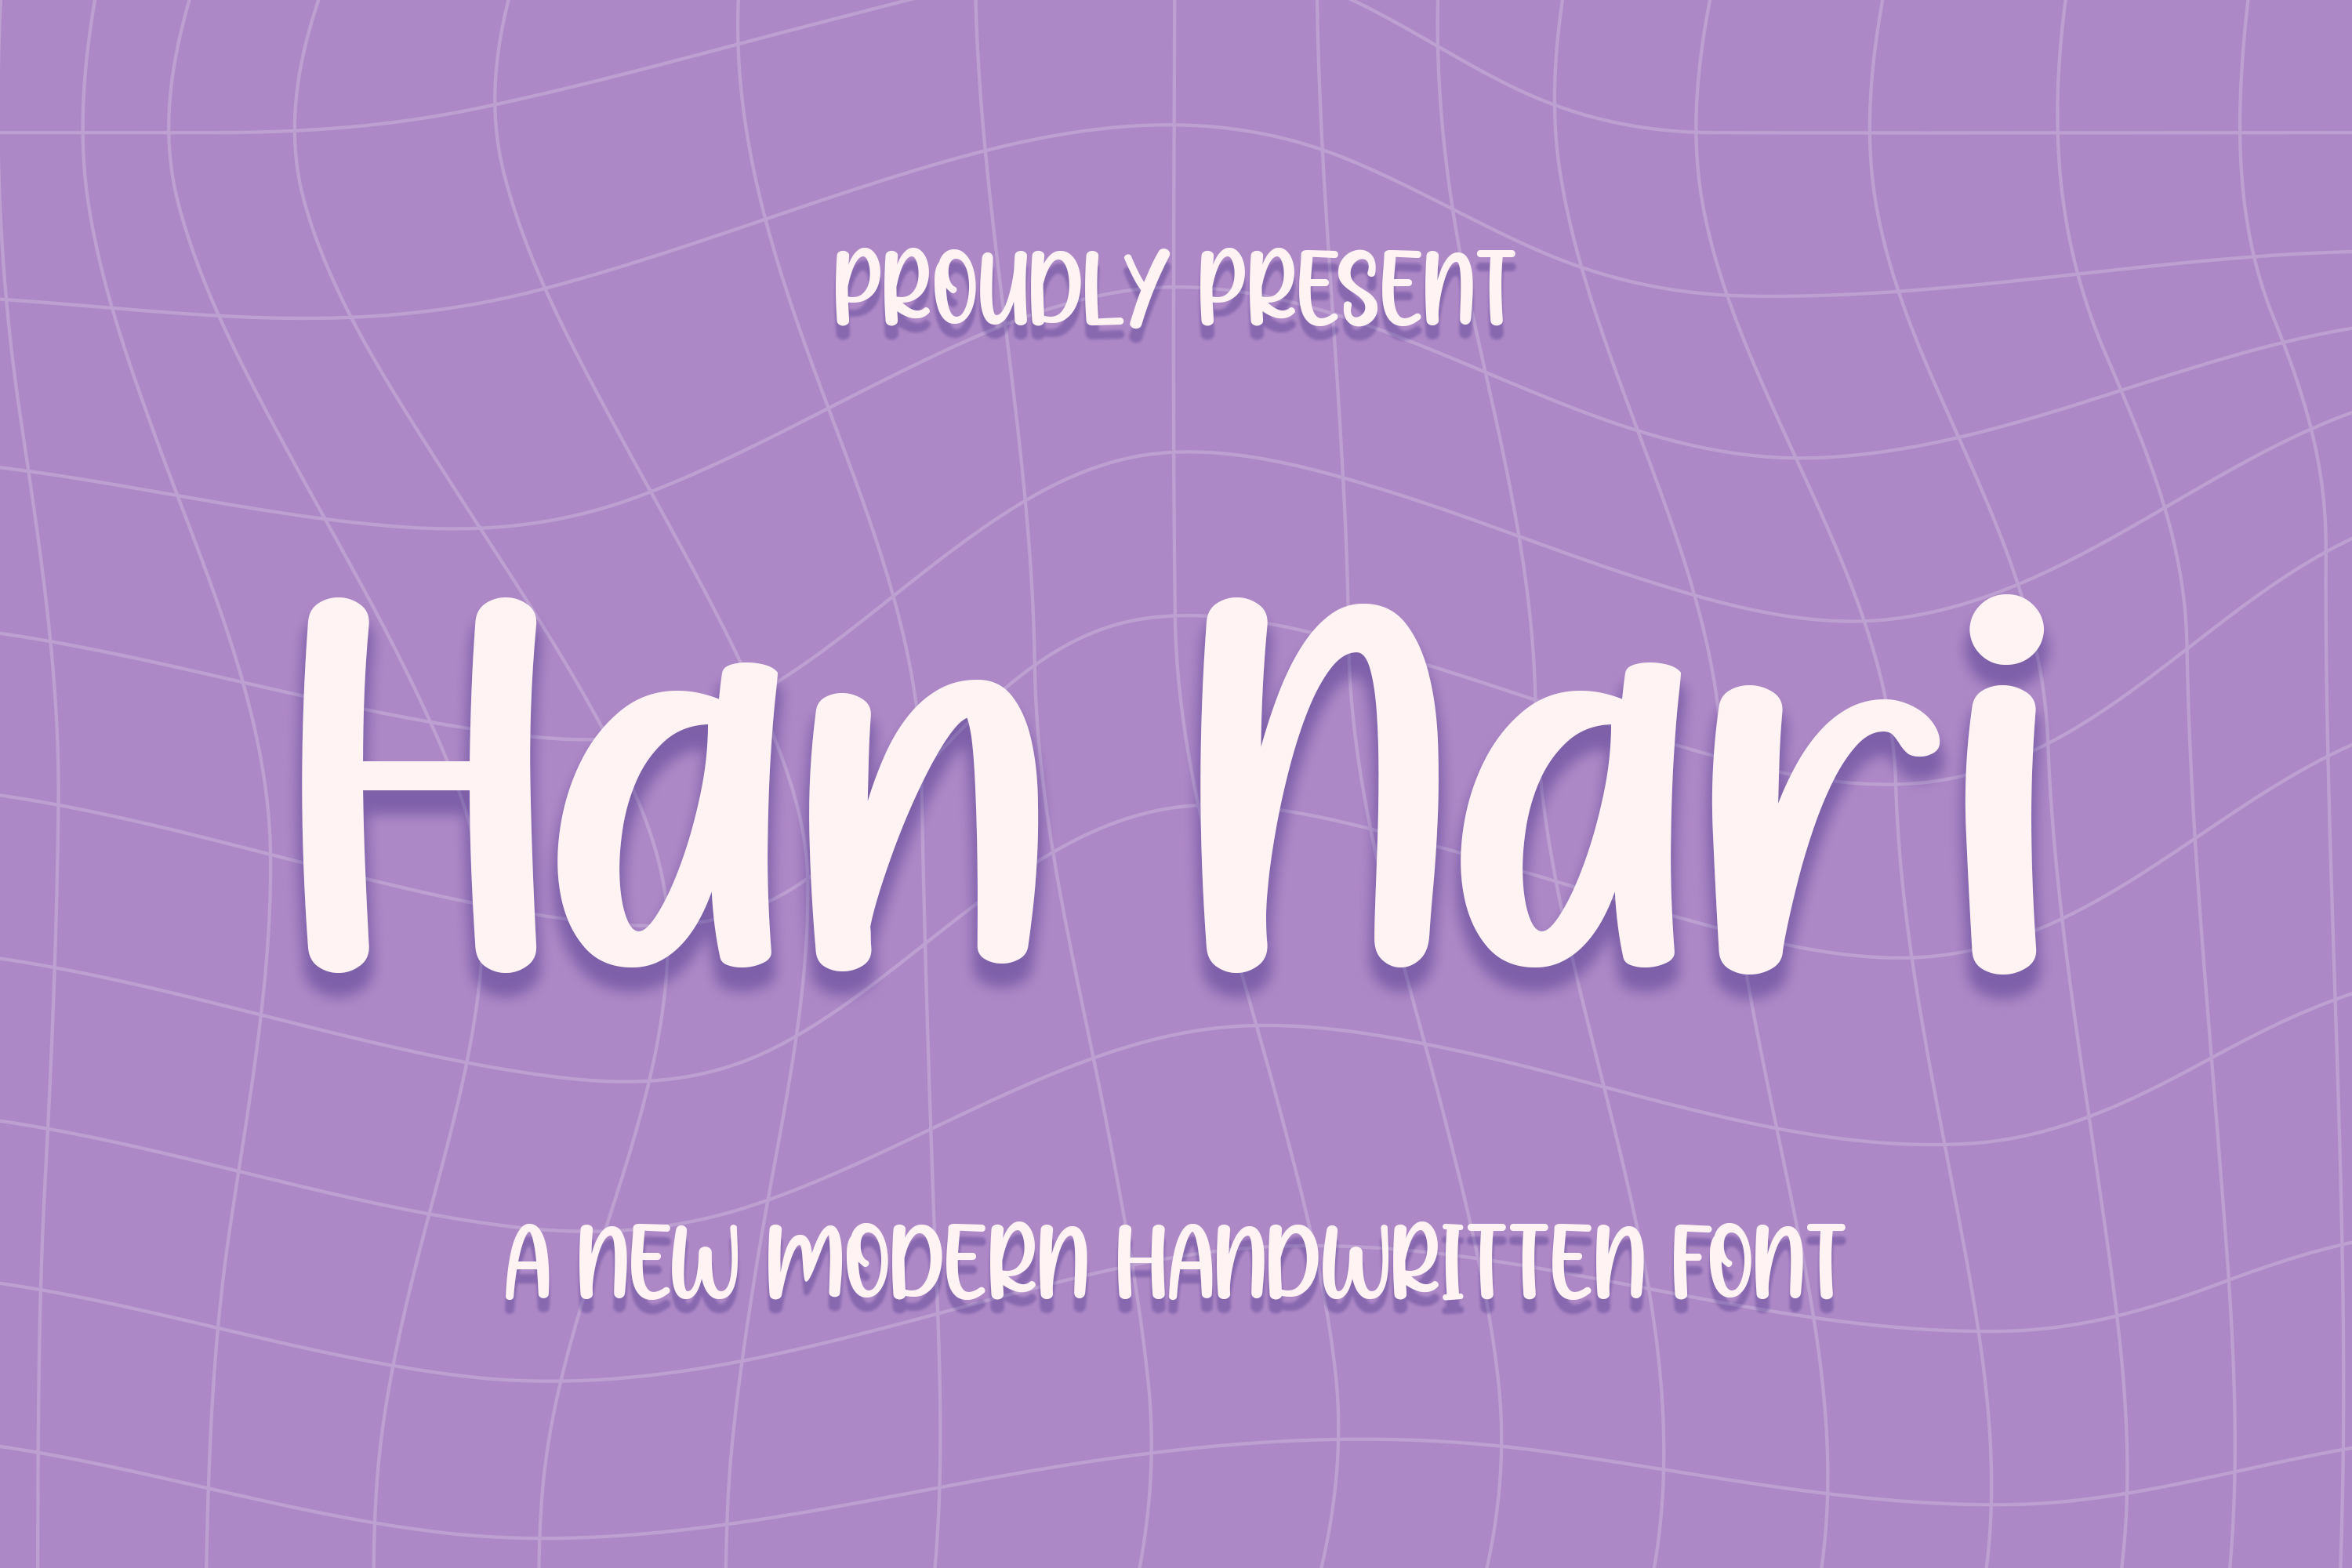 Han Nari